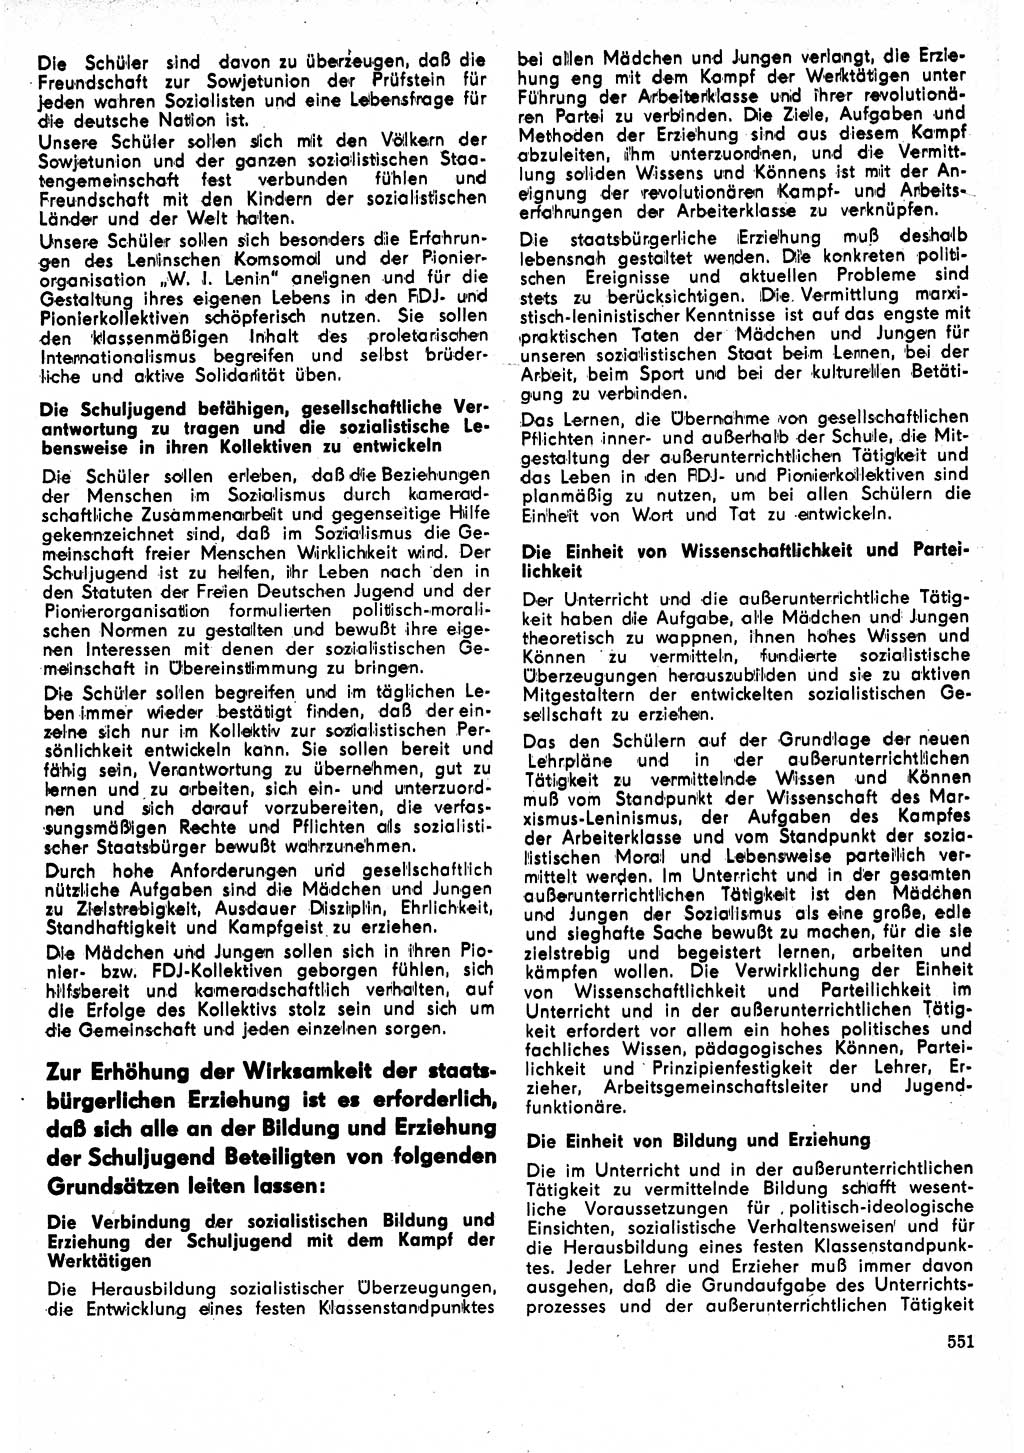 Neuer Weg (NW), Organ des Zentralkomitees (ZK) der SED (Sozialistische Einheitspartei Deutschlands) für Fragen des Parteilebens, 24. Jahrgang [Deutsche Demokratische Republik (DDR)] 1969, Seite 551 (NW ZK SED DDR 1969, S. 551)